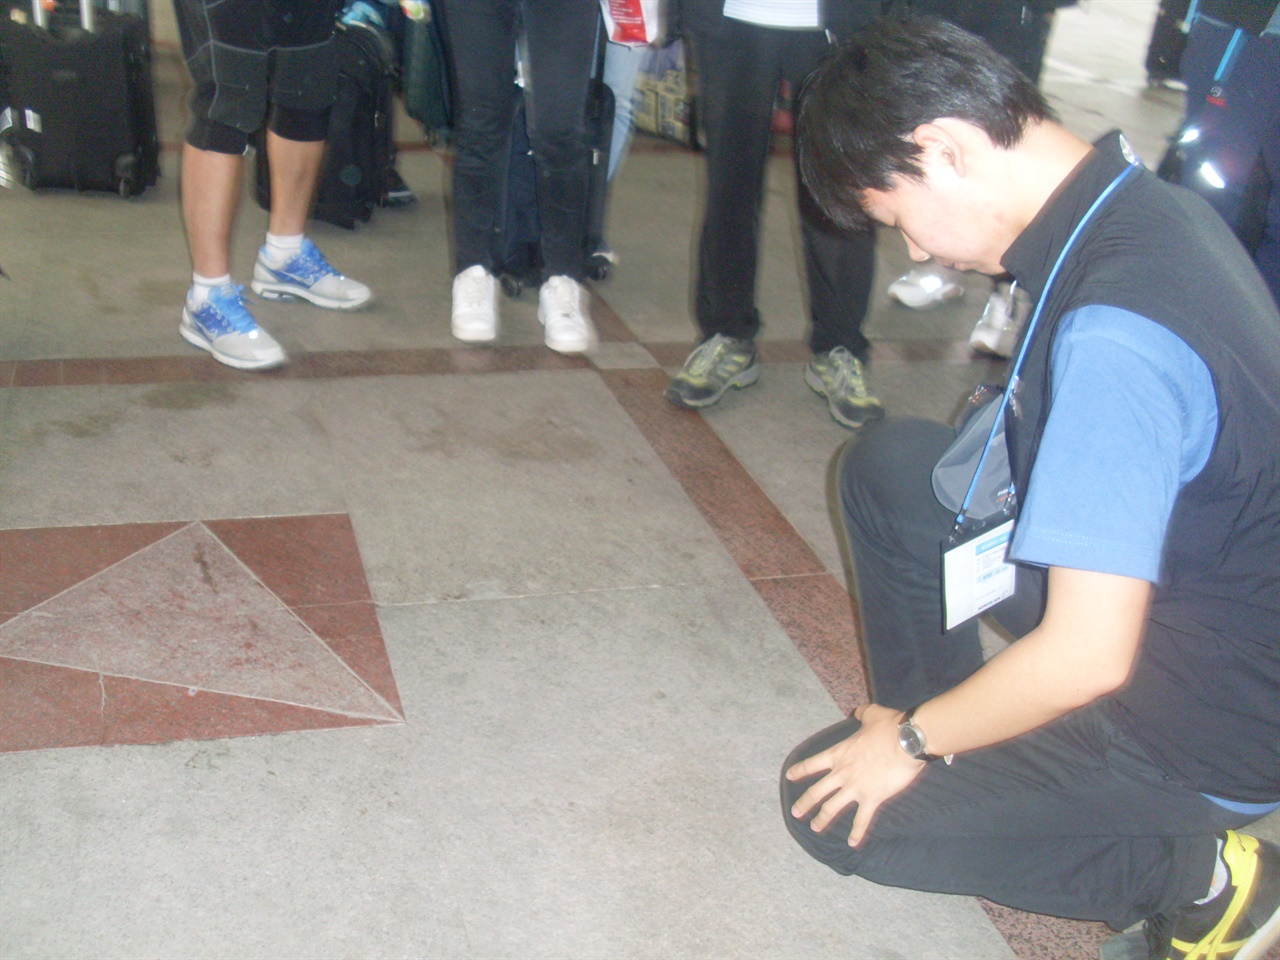  2011년 8월 7일 안중근의사기념관 대학생 안중근 의사 해외독립운동사적지 탐방단 소속으로 중국 하얼빈역을 찾았을 당시 안중근 의사의 저격지점(삼각형) 앞에 묵념을 올리는 기자의 모습